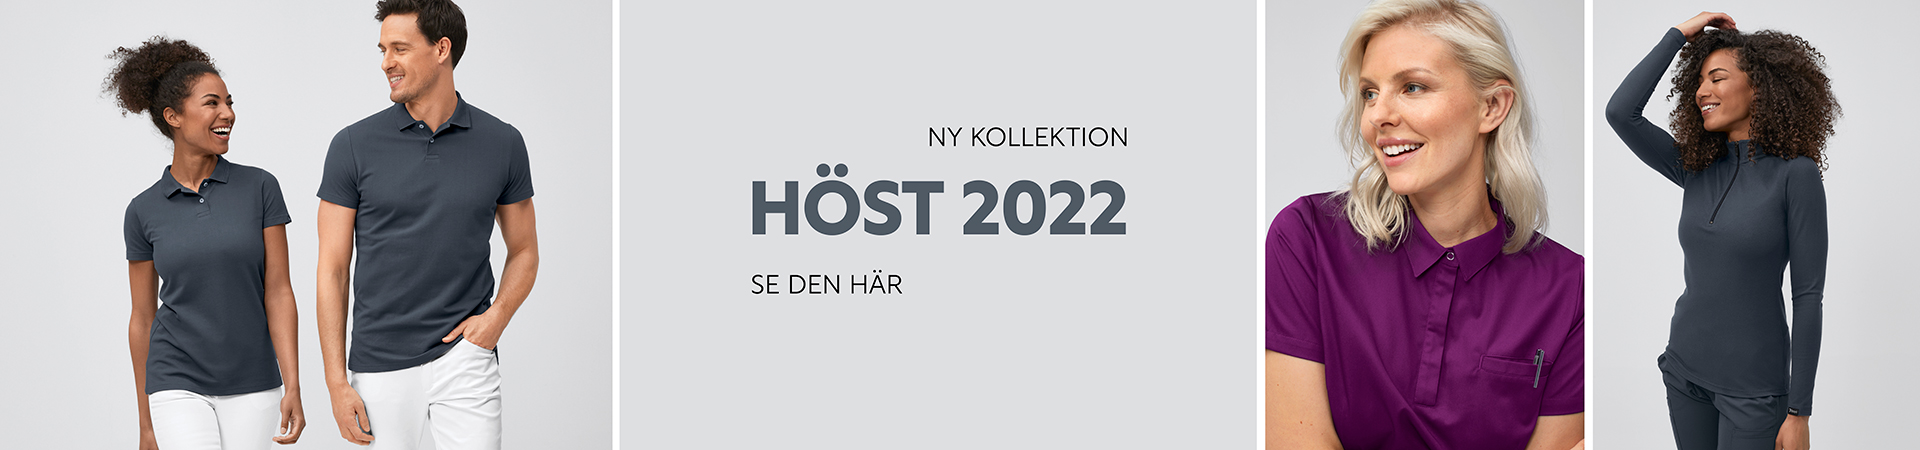 Ny kollektion höst 2022